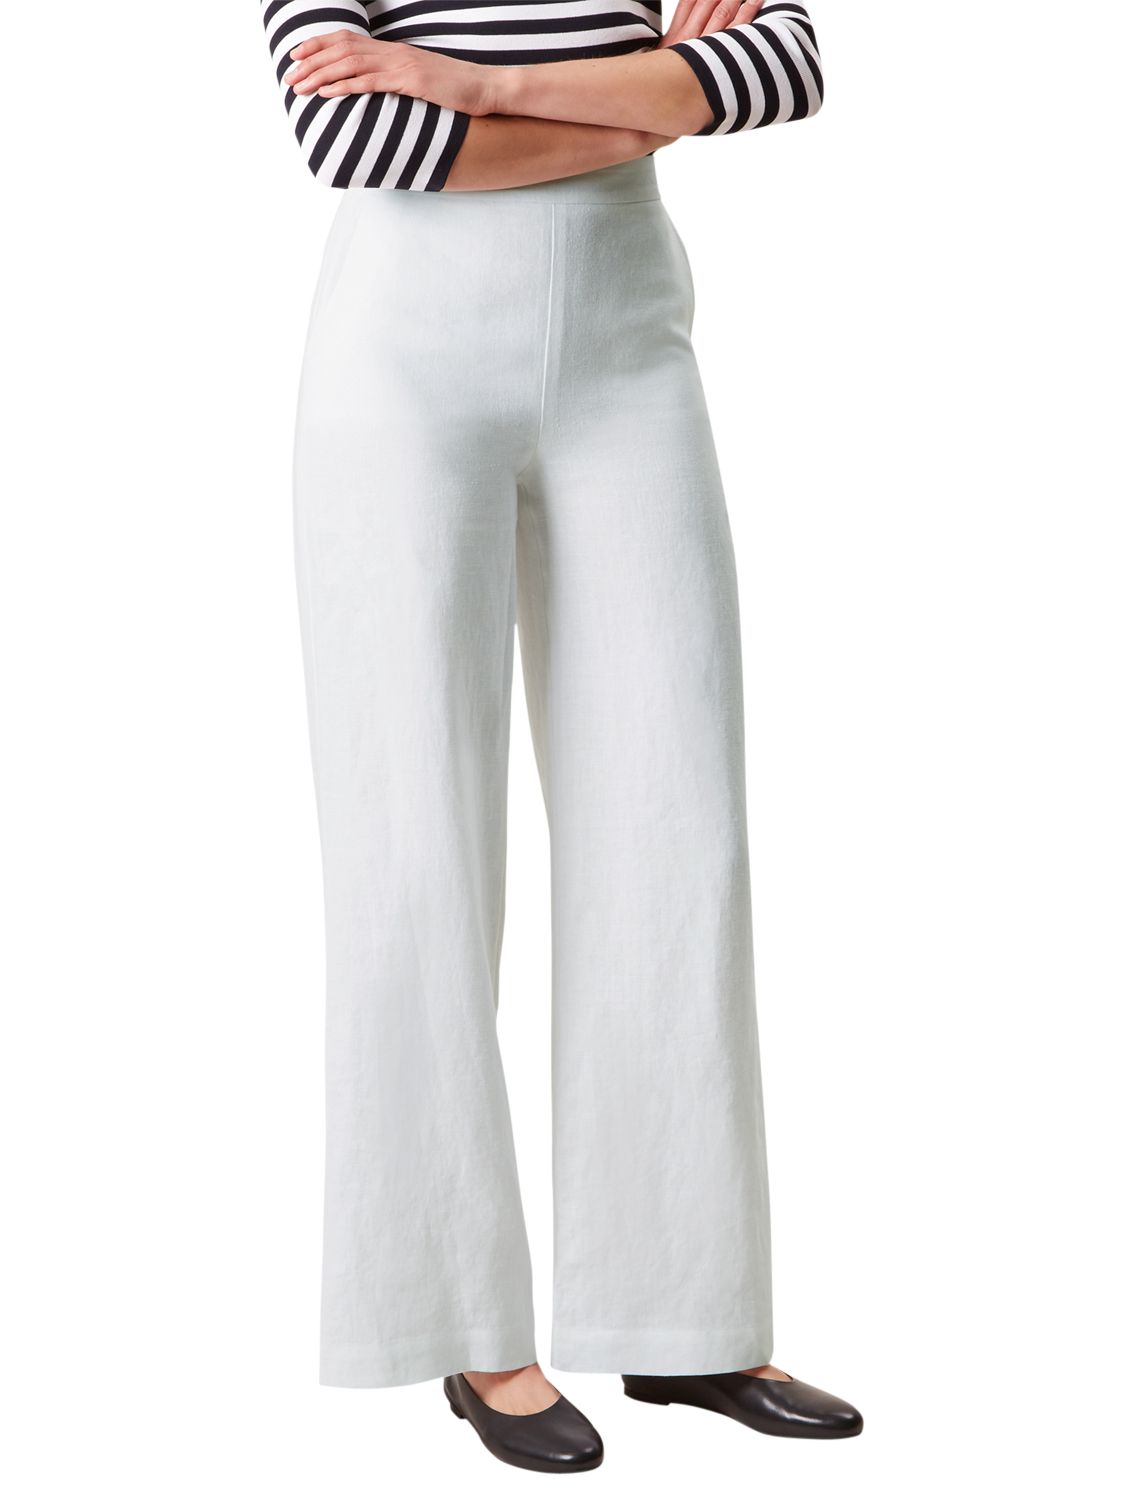 Hobbs Anise Linen Trousers, White, 16